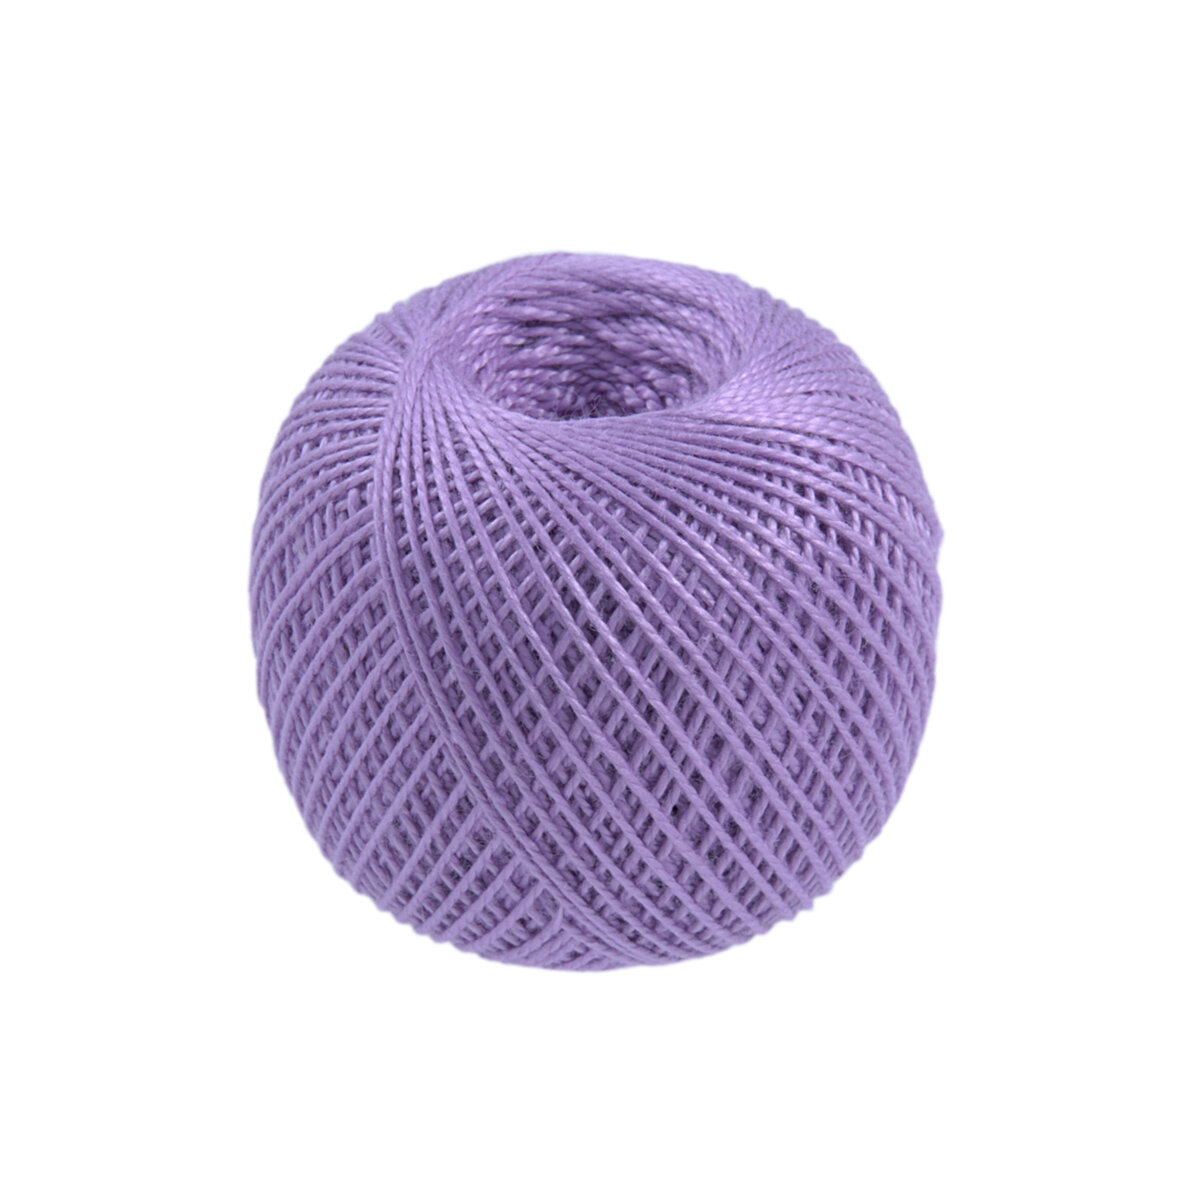 Нитки для вязания и плетения 'ирис' (100% хлопок), 25г, 150м (2106 светло-фиолетовый), 20 мотков